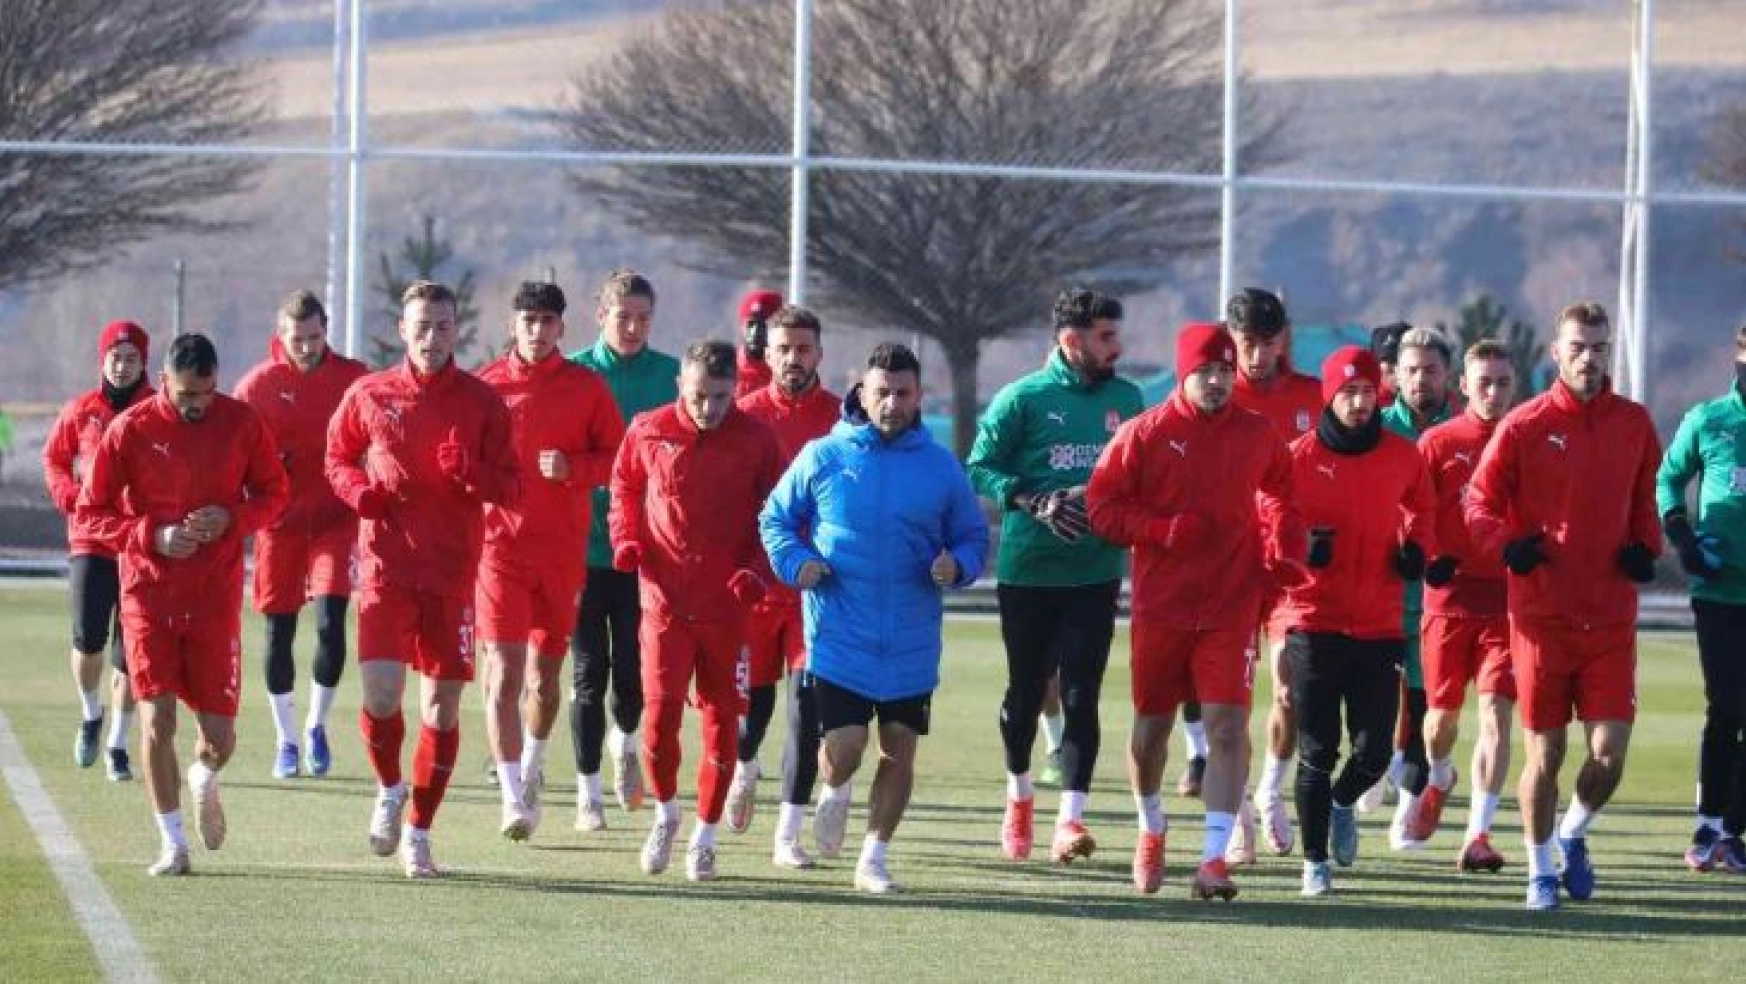 Sivasspor, Alanyaspor maçına hazır